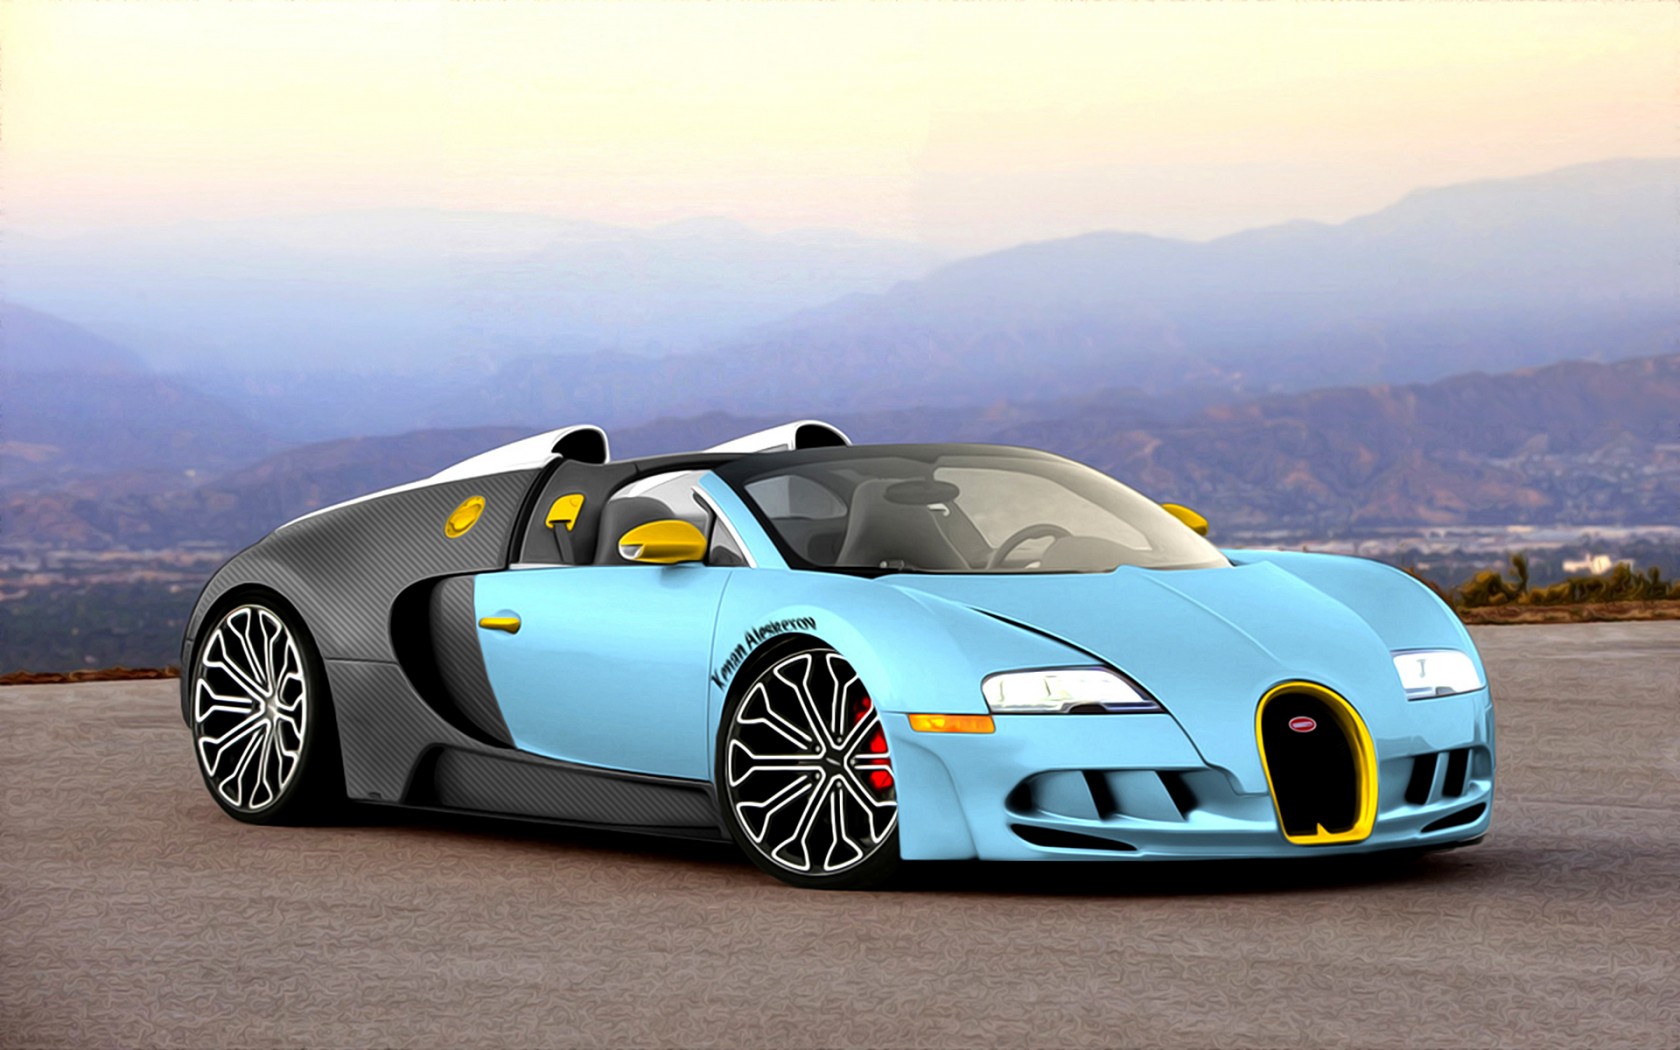 壁纸 蓝色凯龙布加迪超级跑车的速度 3840x2160 UHD 4K 高清壁纸, 图片, 照片